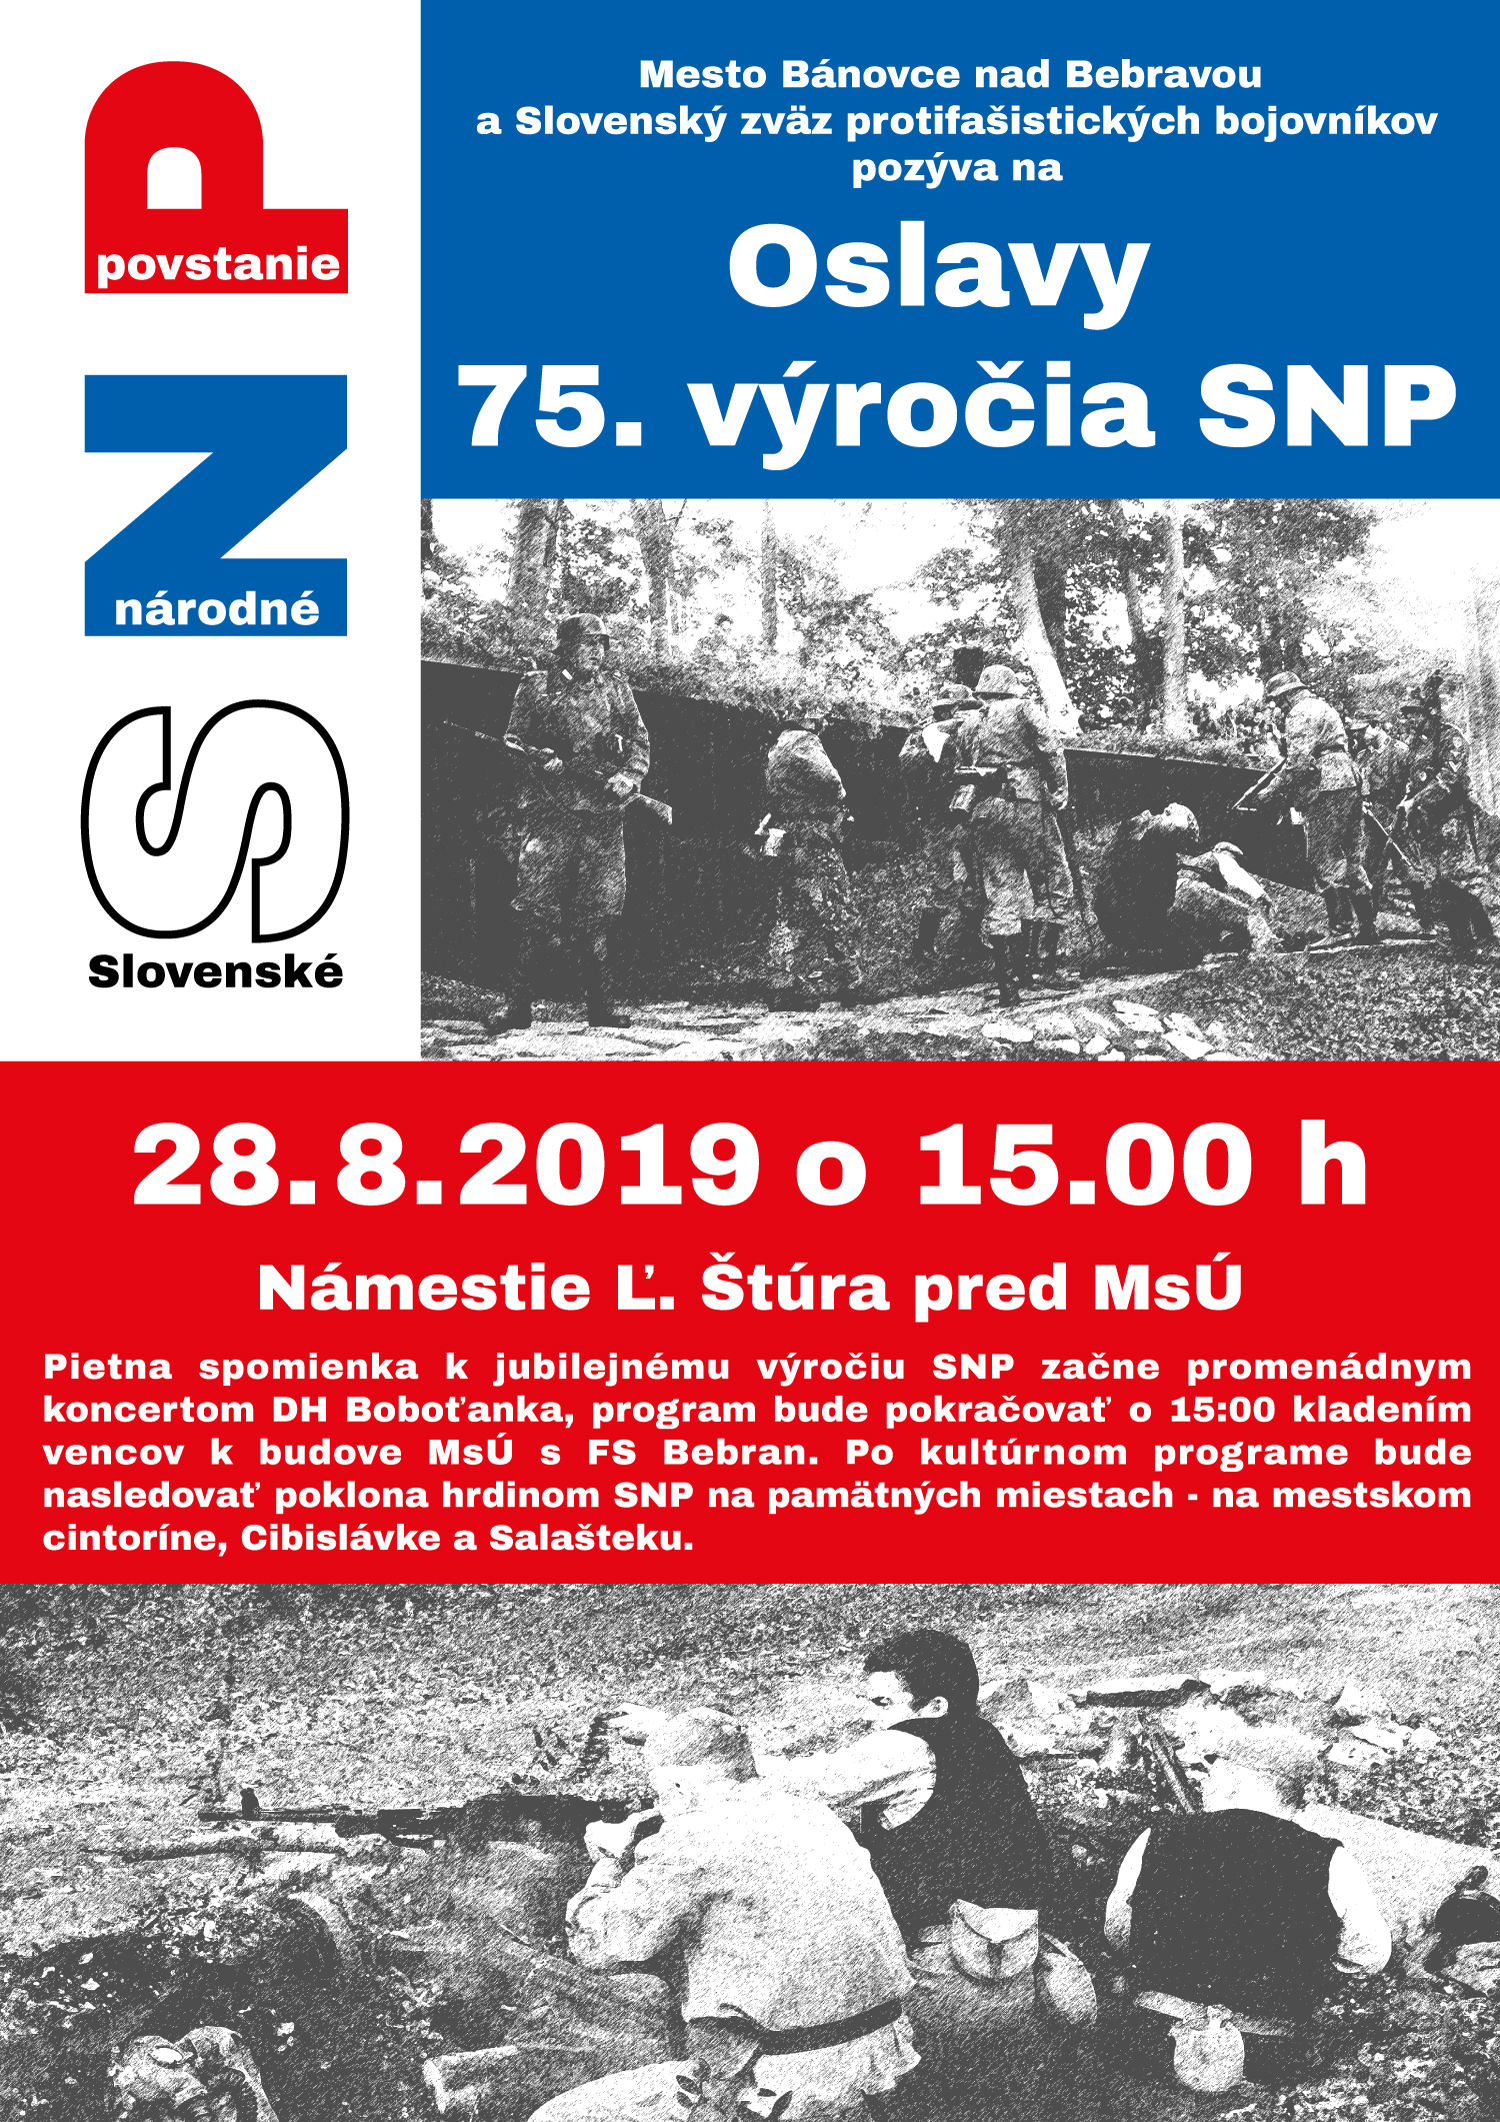 Mestsk oslavy 75. vroia SNP v Bnovciach nad Bebravou 2019